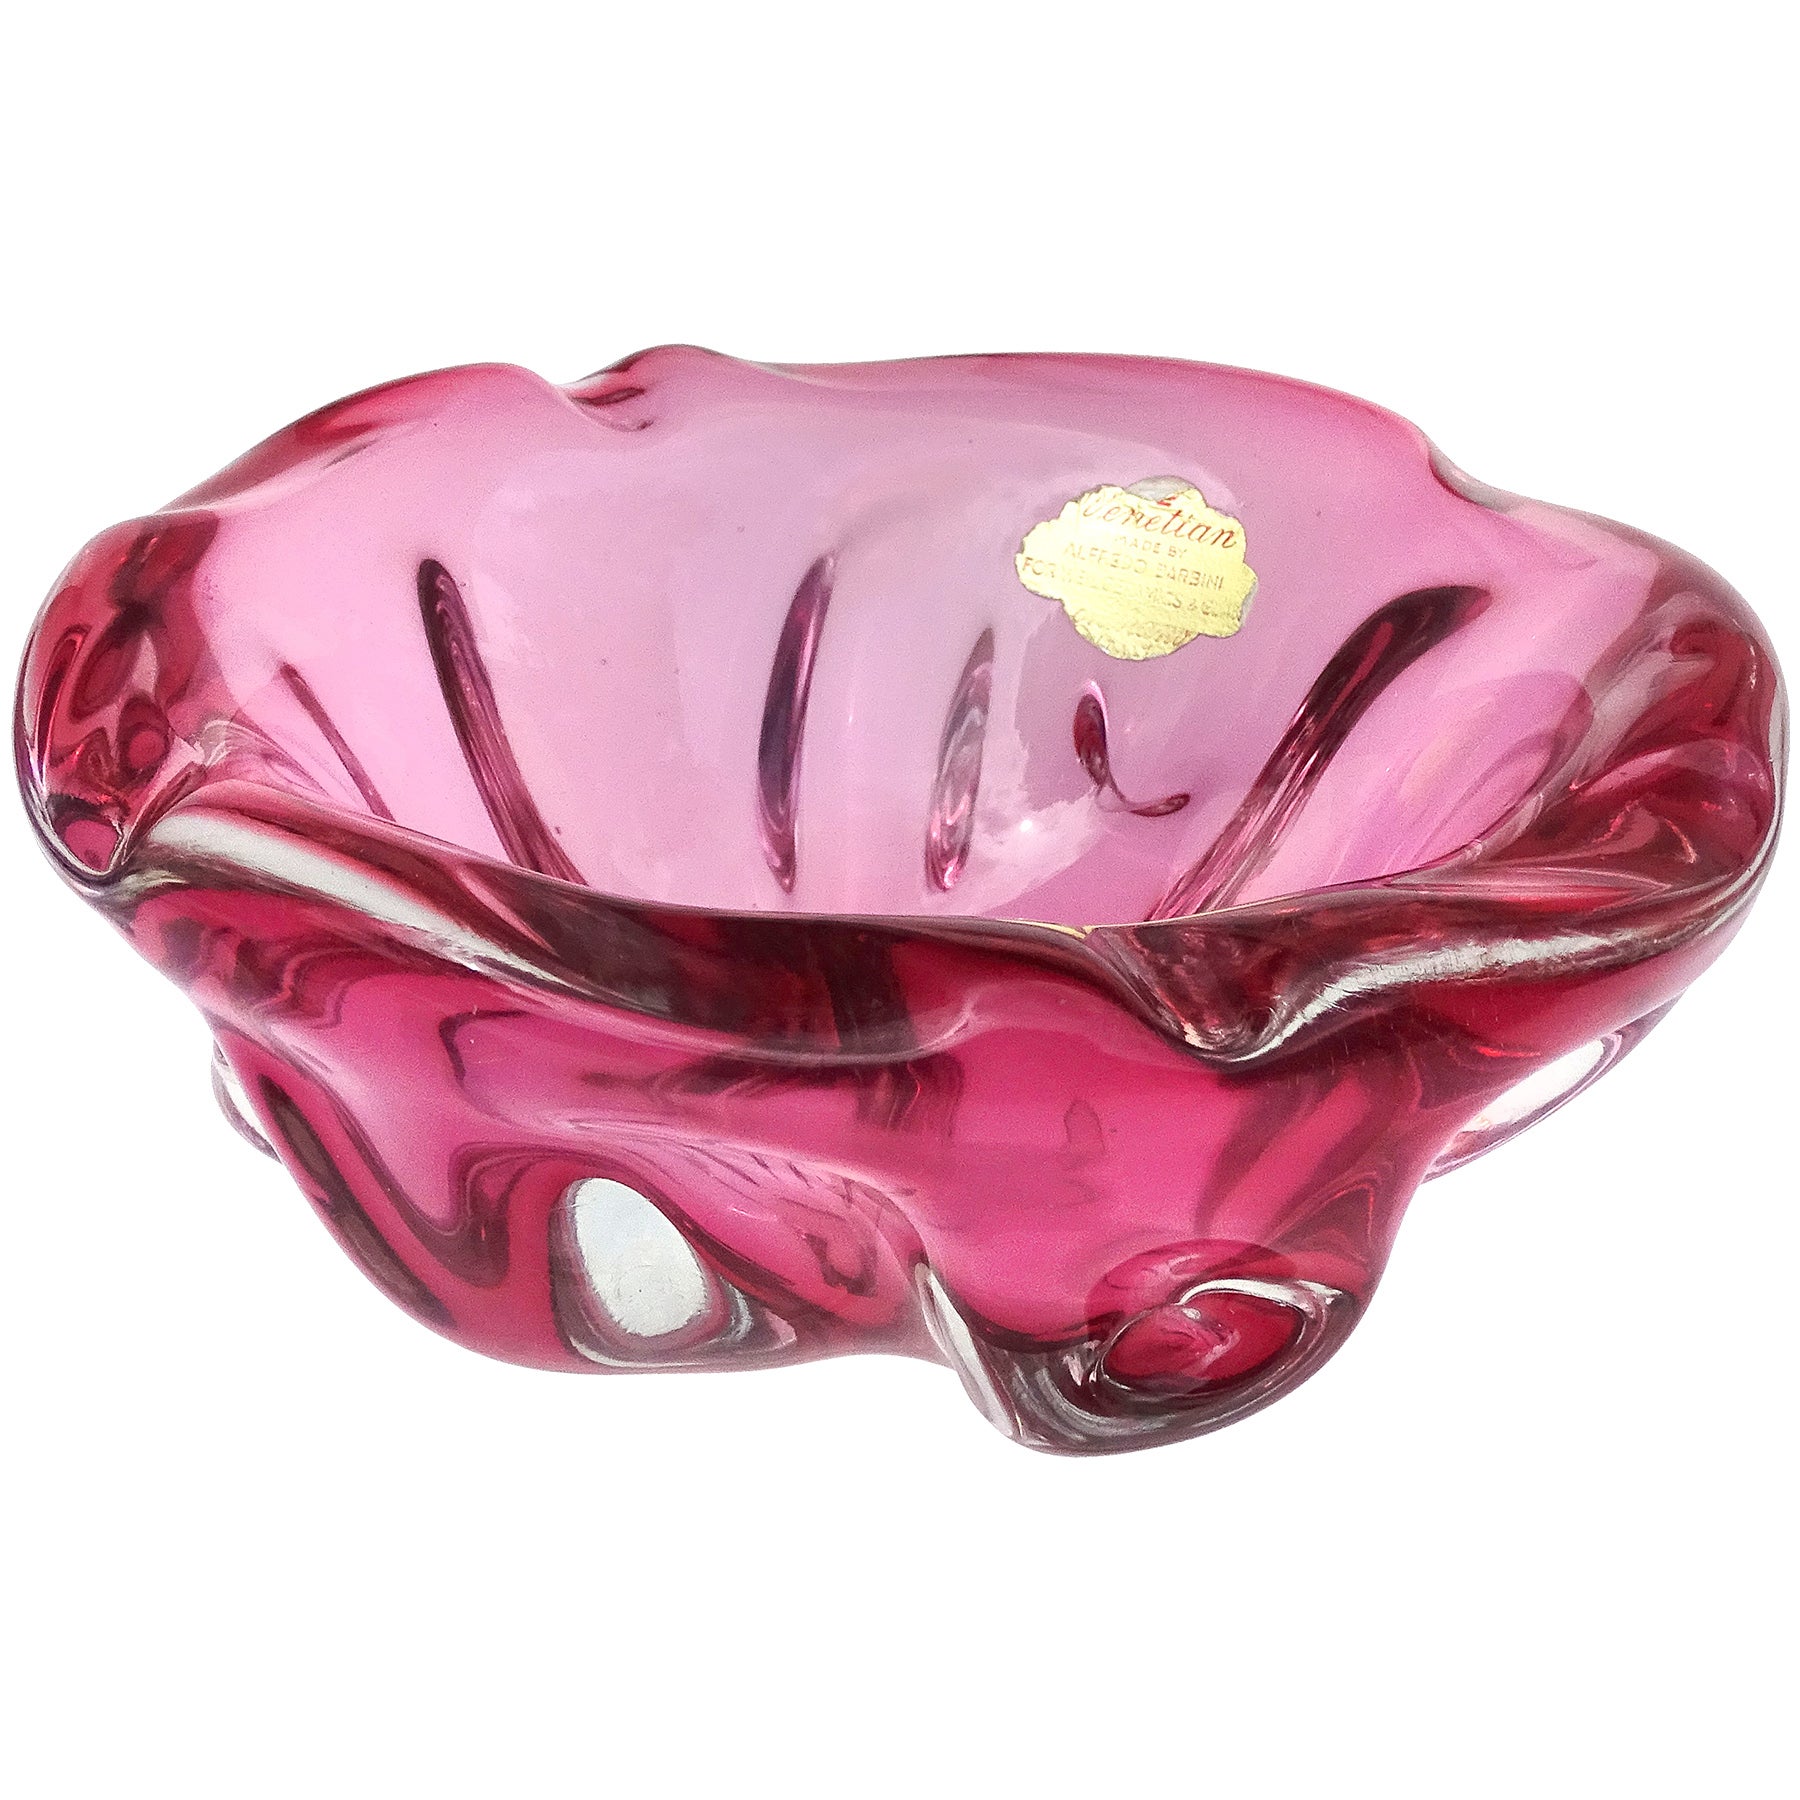 Barbini Murano Label Sommerso Pink Italian Art Glass Decorative Bowl Ashtray For Sale